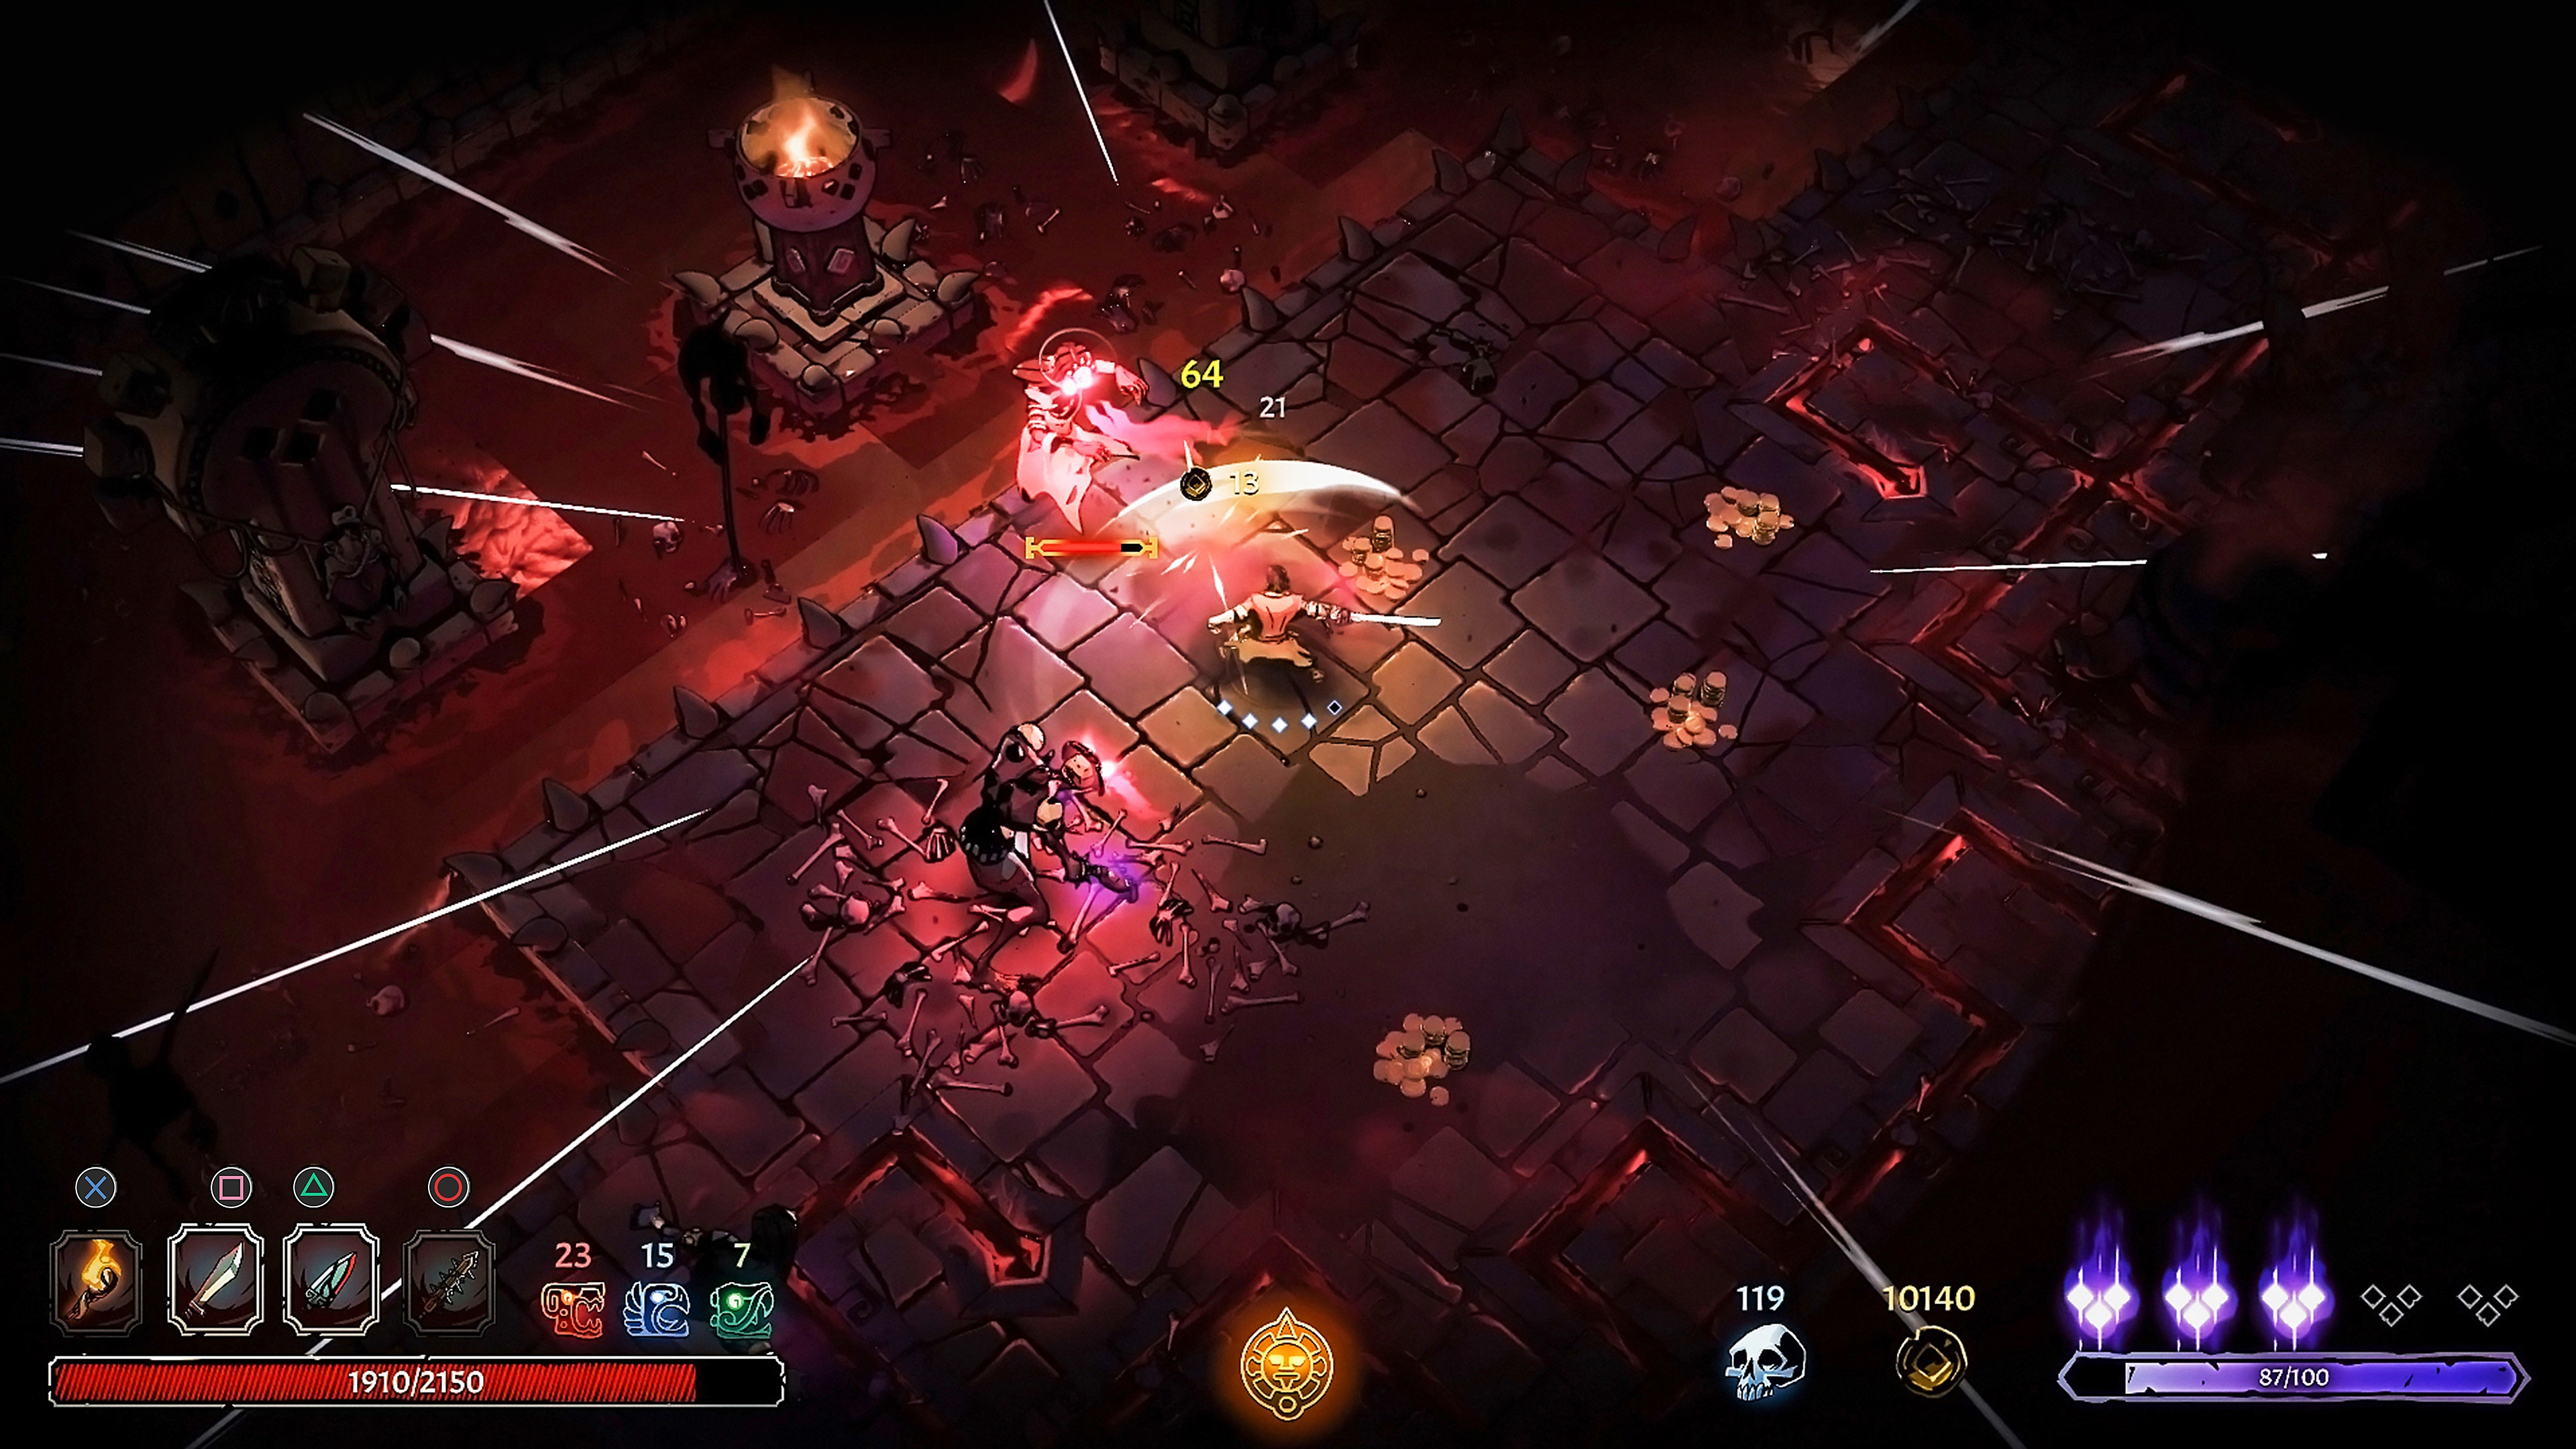 لقطة شاشة للعبة Curse of the Dead gods تُظهر طريقة اللعب القتالية